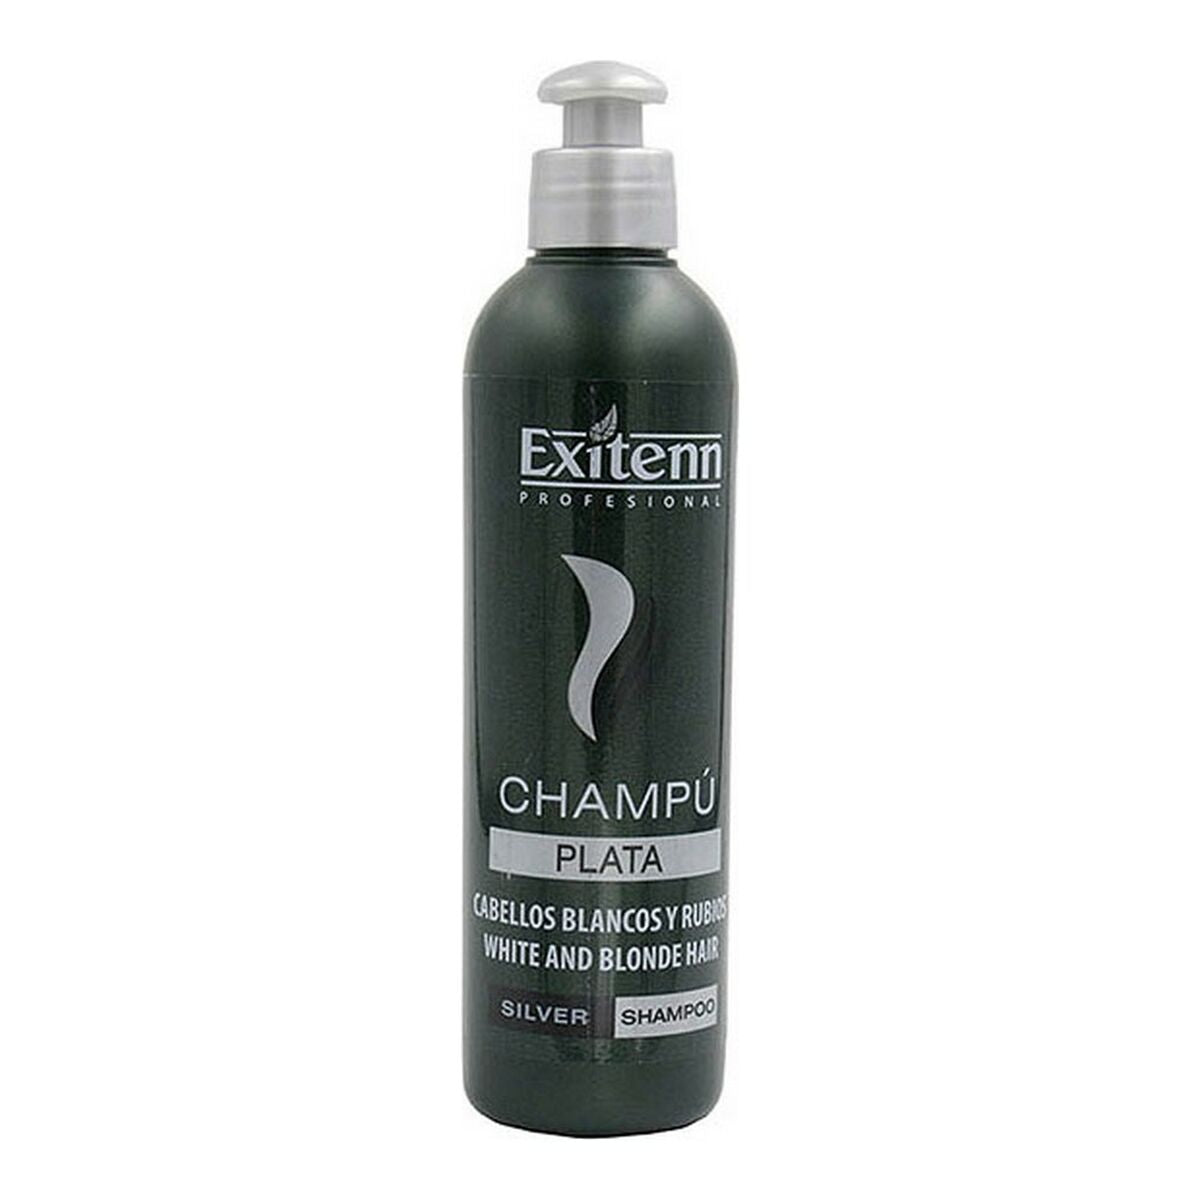 Shampoo für Blondes und Graues Haar Exitenn (250 ml)